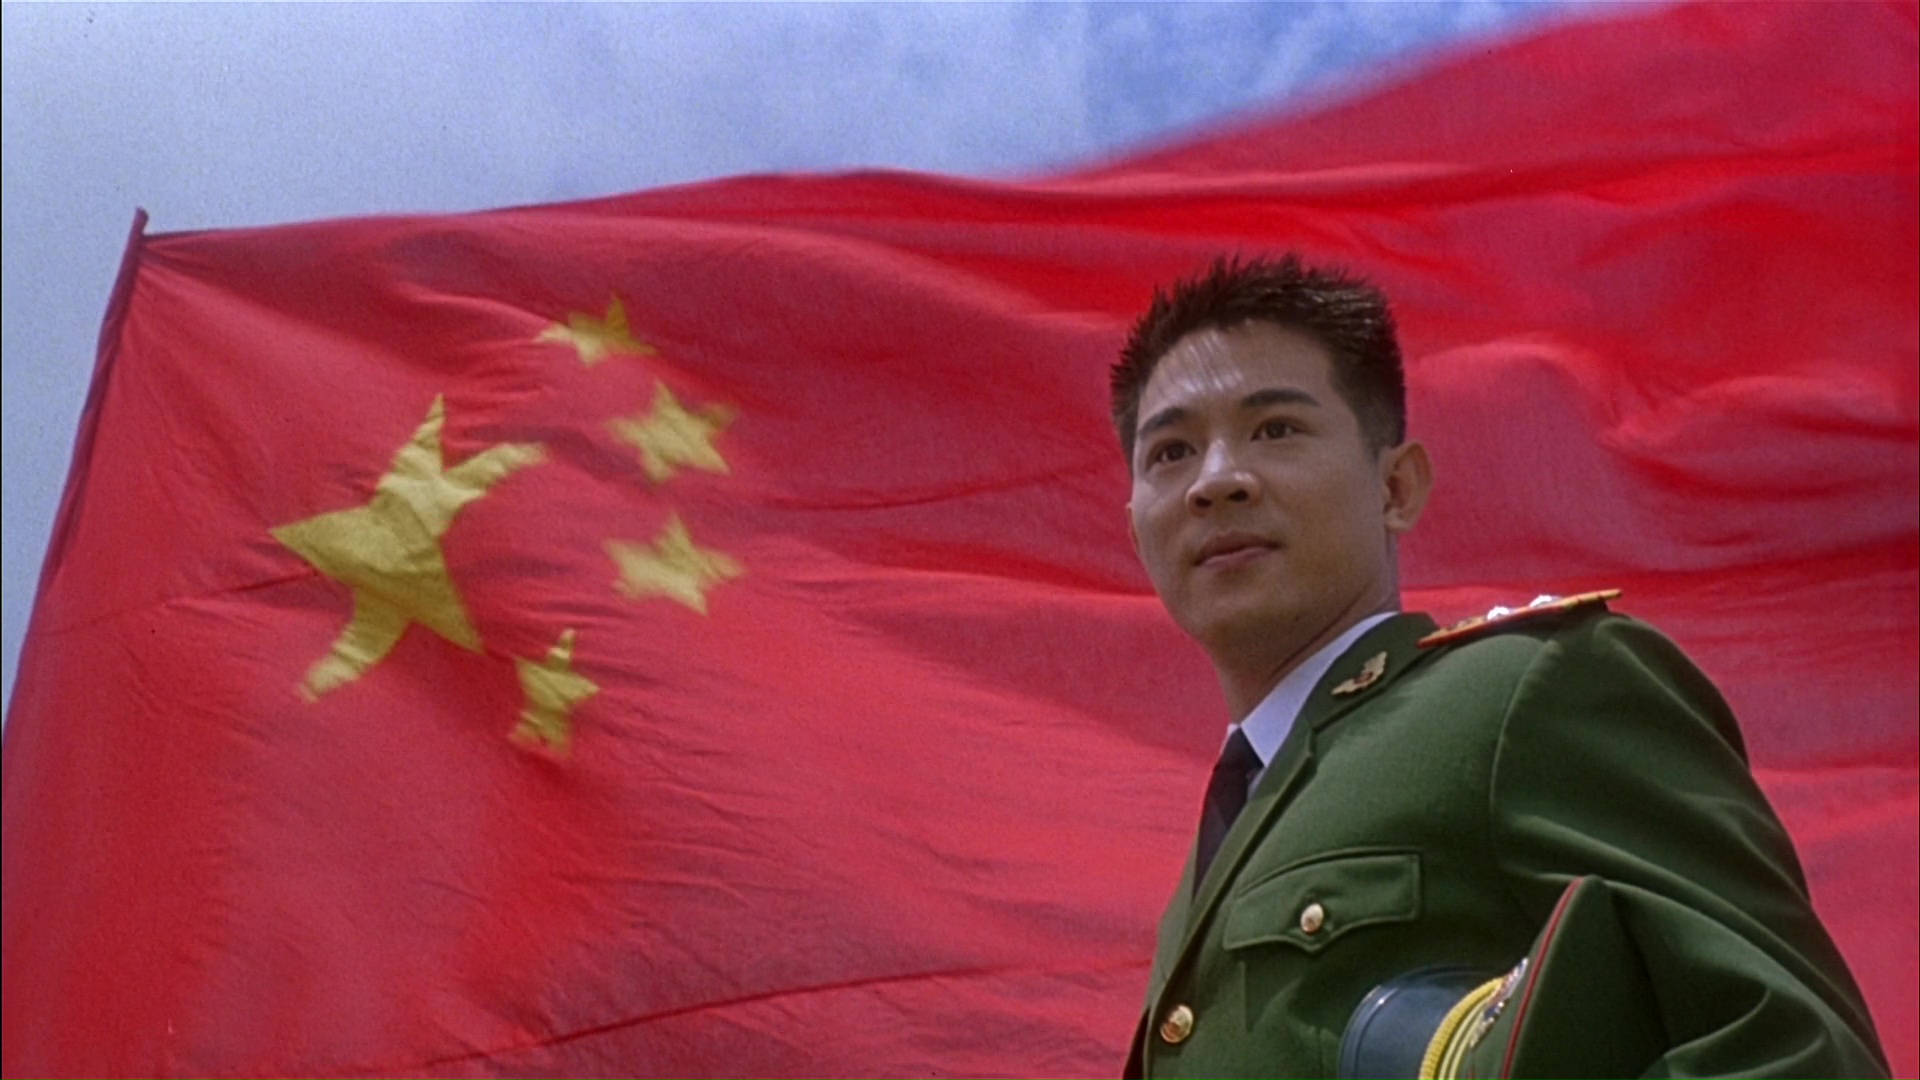 Телохранитель из Пекина / Zhong Nan Hai bao biao (The Defender) / 1994 / ПМ, АП (Визгунов, Живов) / WEB-DL (1080p)